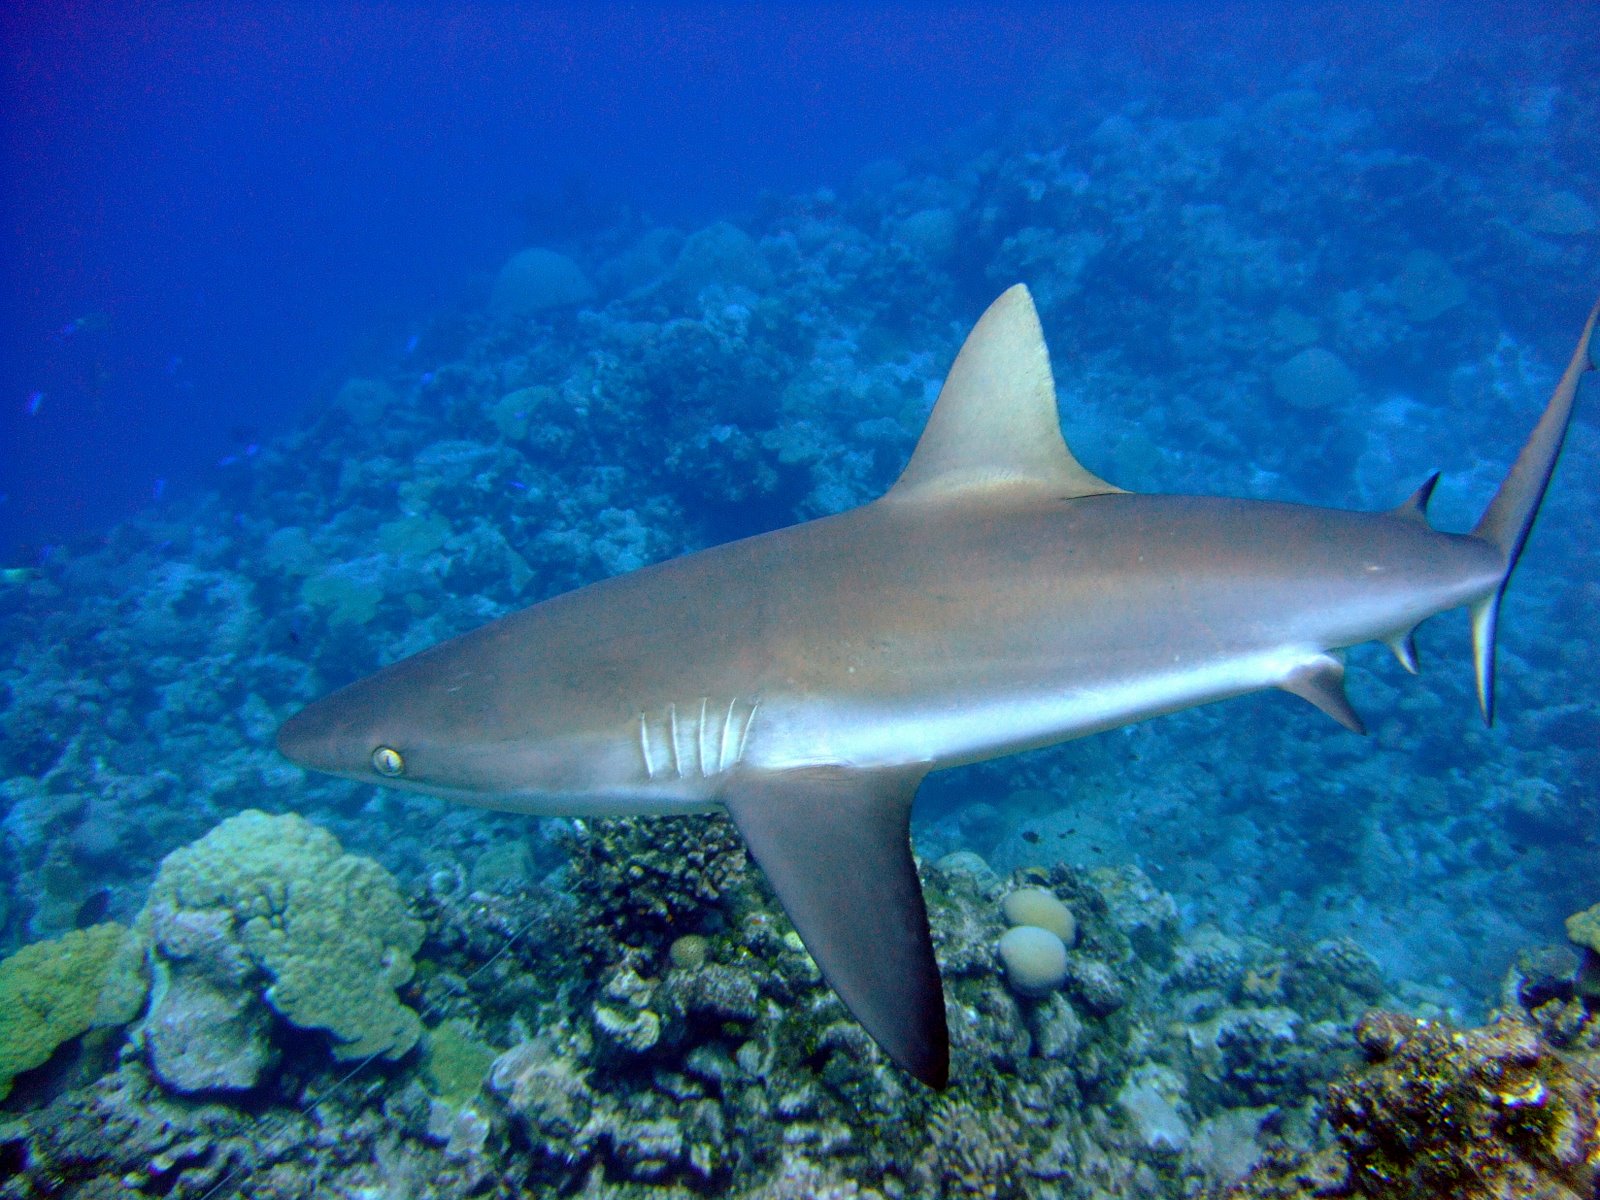 Le requin gris de récif est le requin le plus commun dans la bande équatoriale de l'Indo-Pacifique. Il peut vivre&nbsp;32 ans et mesure en moyenne 1,9 m. Comme son nom l'indique, il vit dans les récifs coralliens. À la Pleine Lune, ce gros poisson migre vers les profondeurs.&nbsp;Ce comportement aux allures vampiriques est probablement une stratégie d’optimisation d’énergie et de chasse. Le&nbsp;requin&nbsp;suit les proies, elles-mêmes influencées par le cycle lunaire.&nbsp;© NOAA